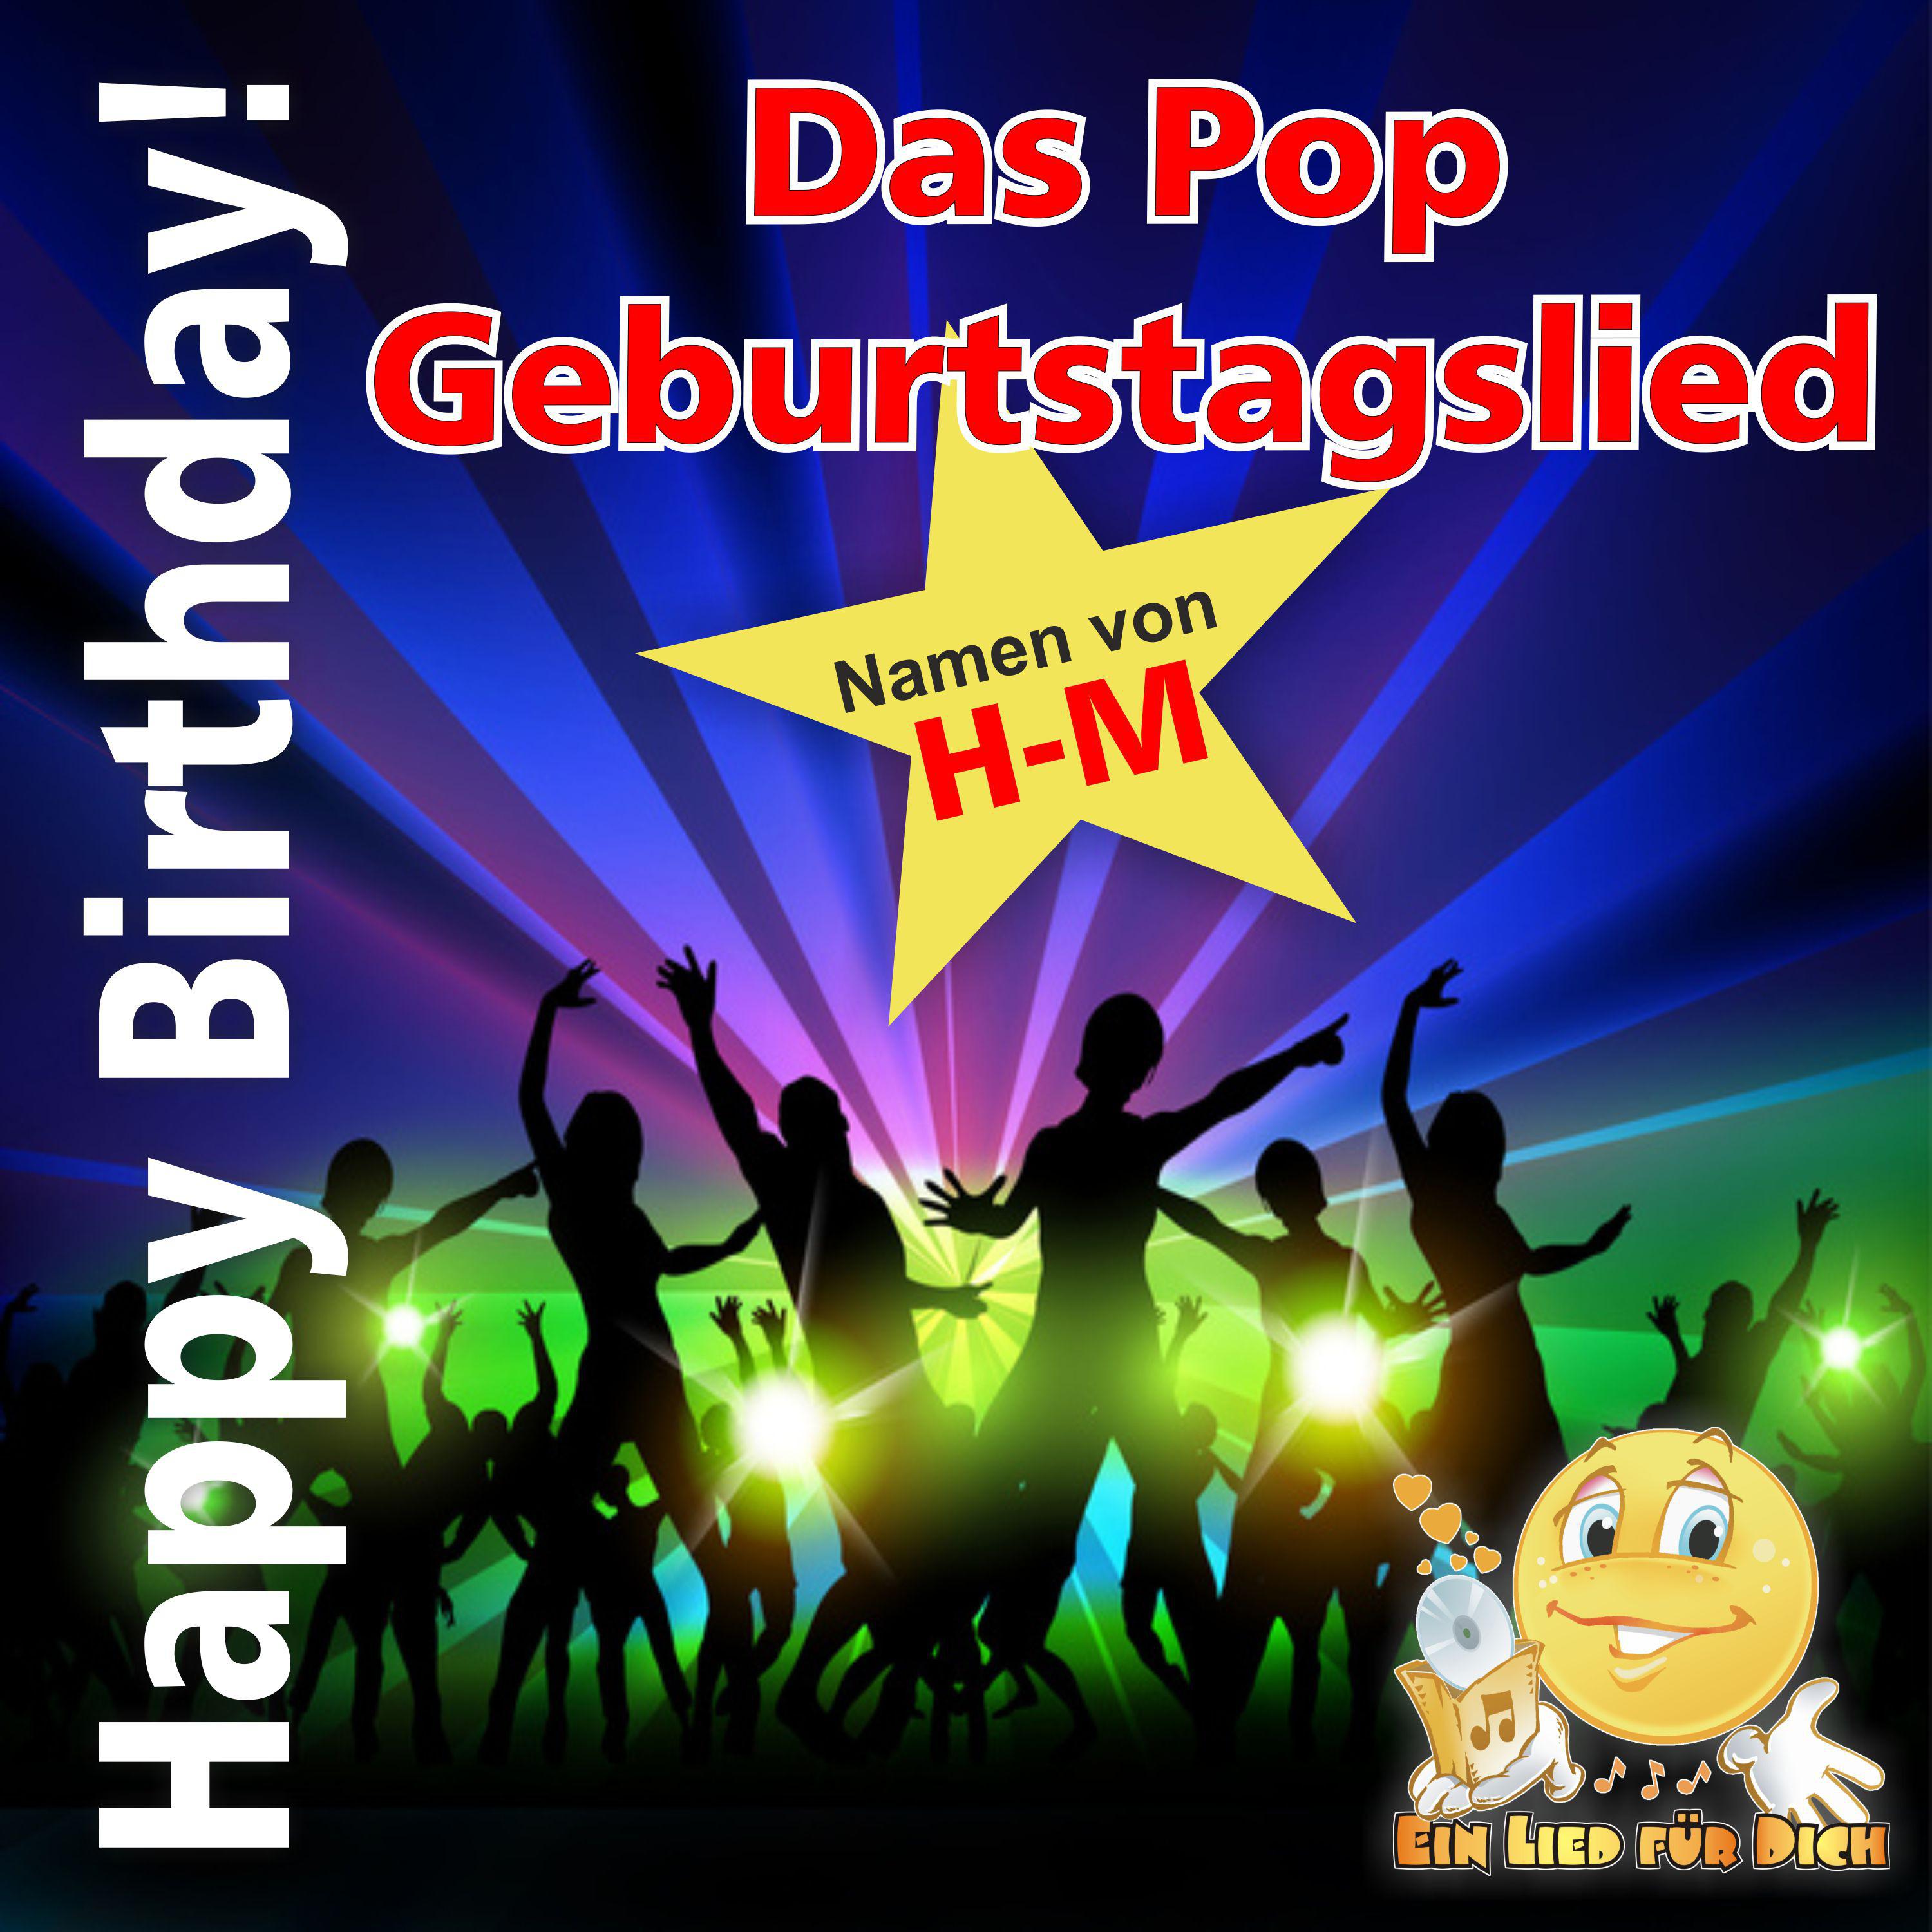 Ein Lied für Dich - Happy Birthday ! Das Pop Geburtstagslied für Jürgen